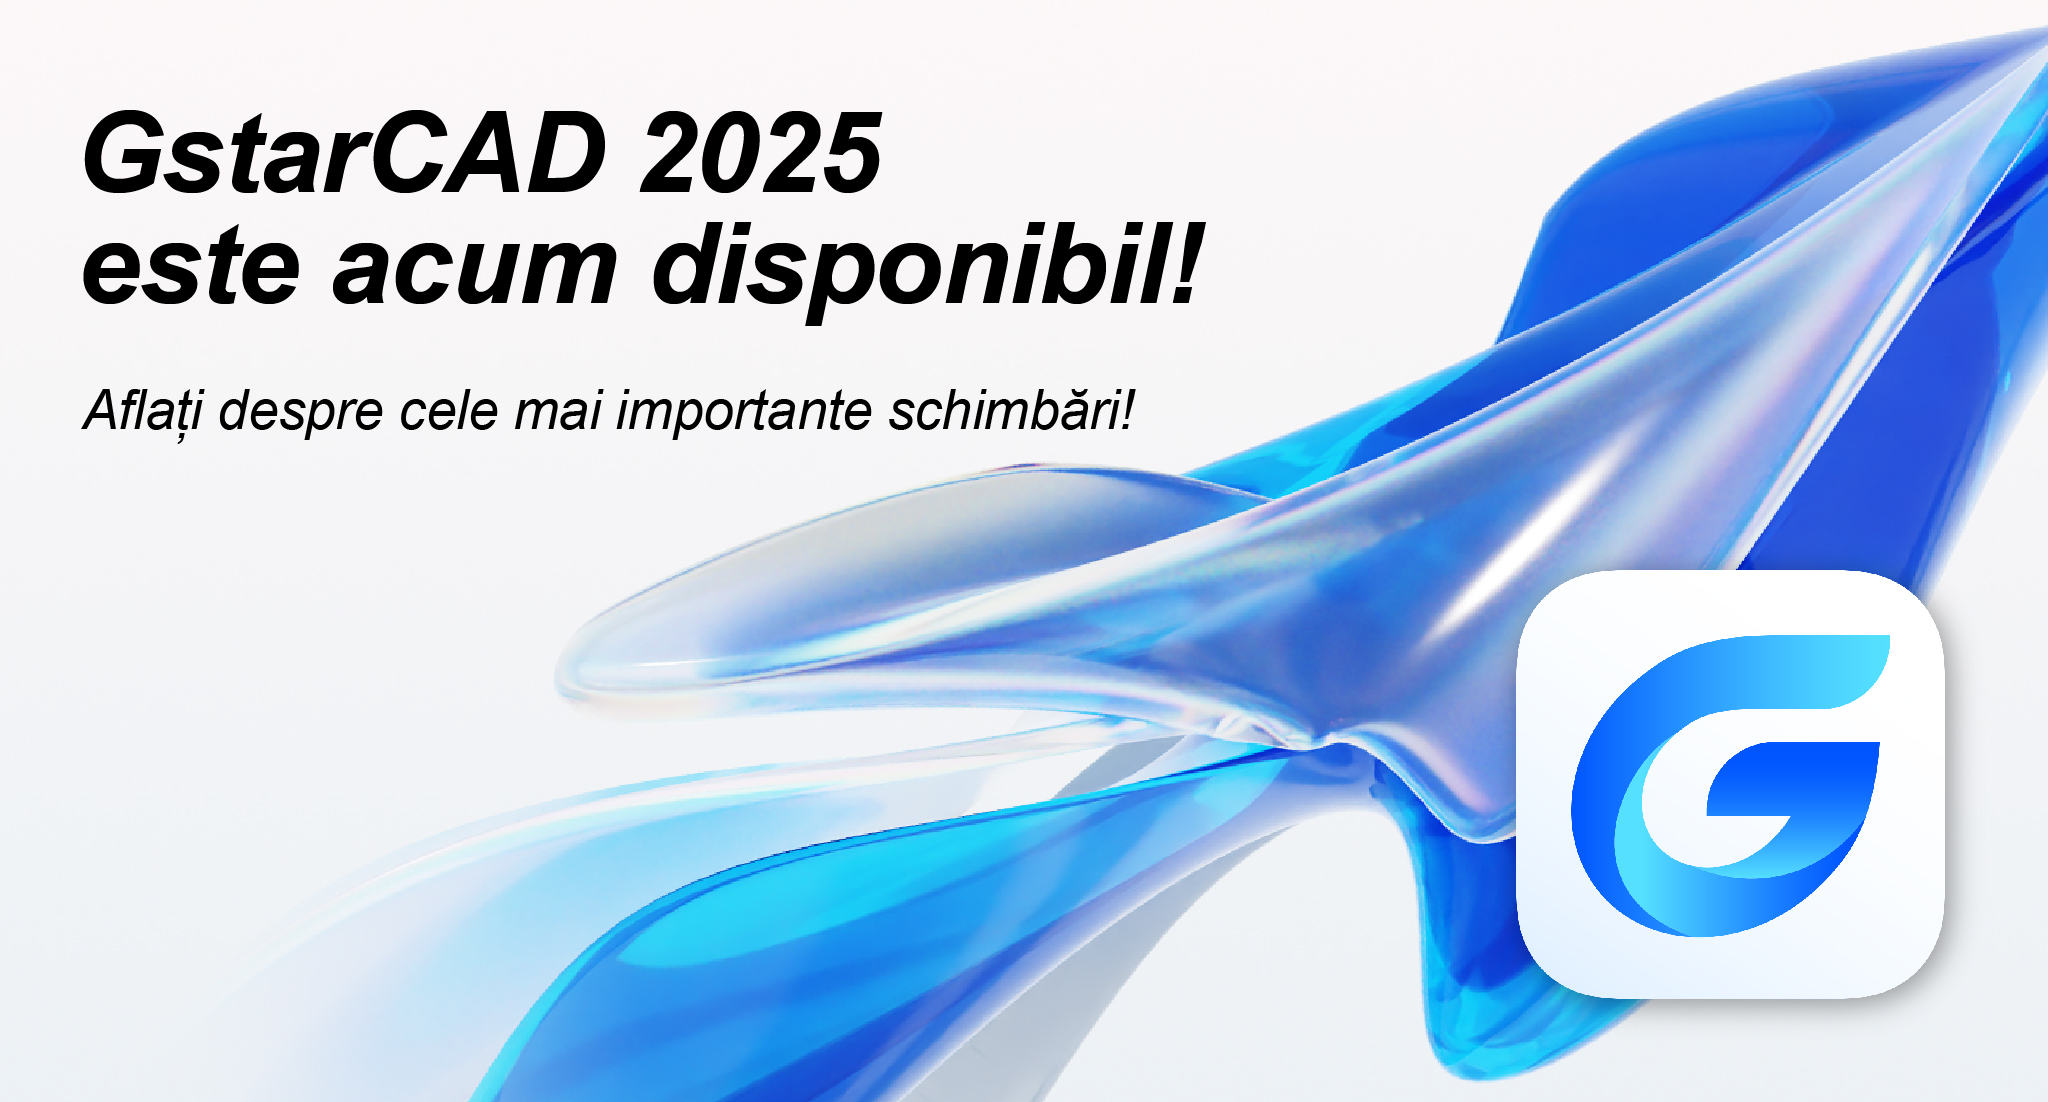 GstarCAD 2025 este acum disponibil!